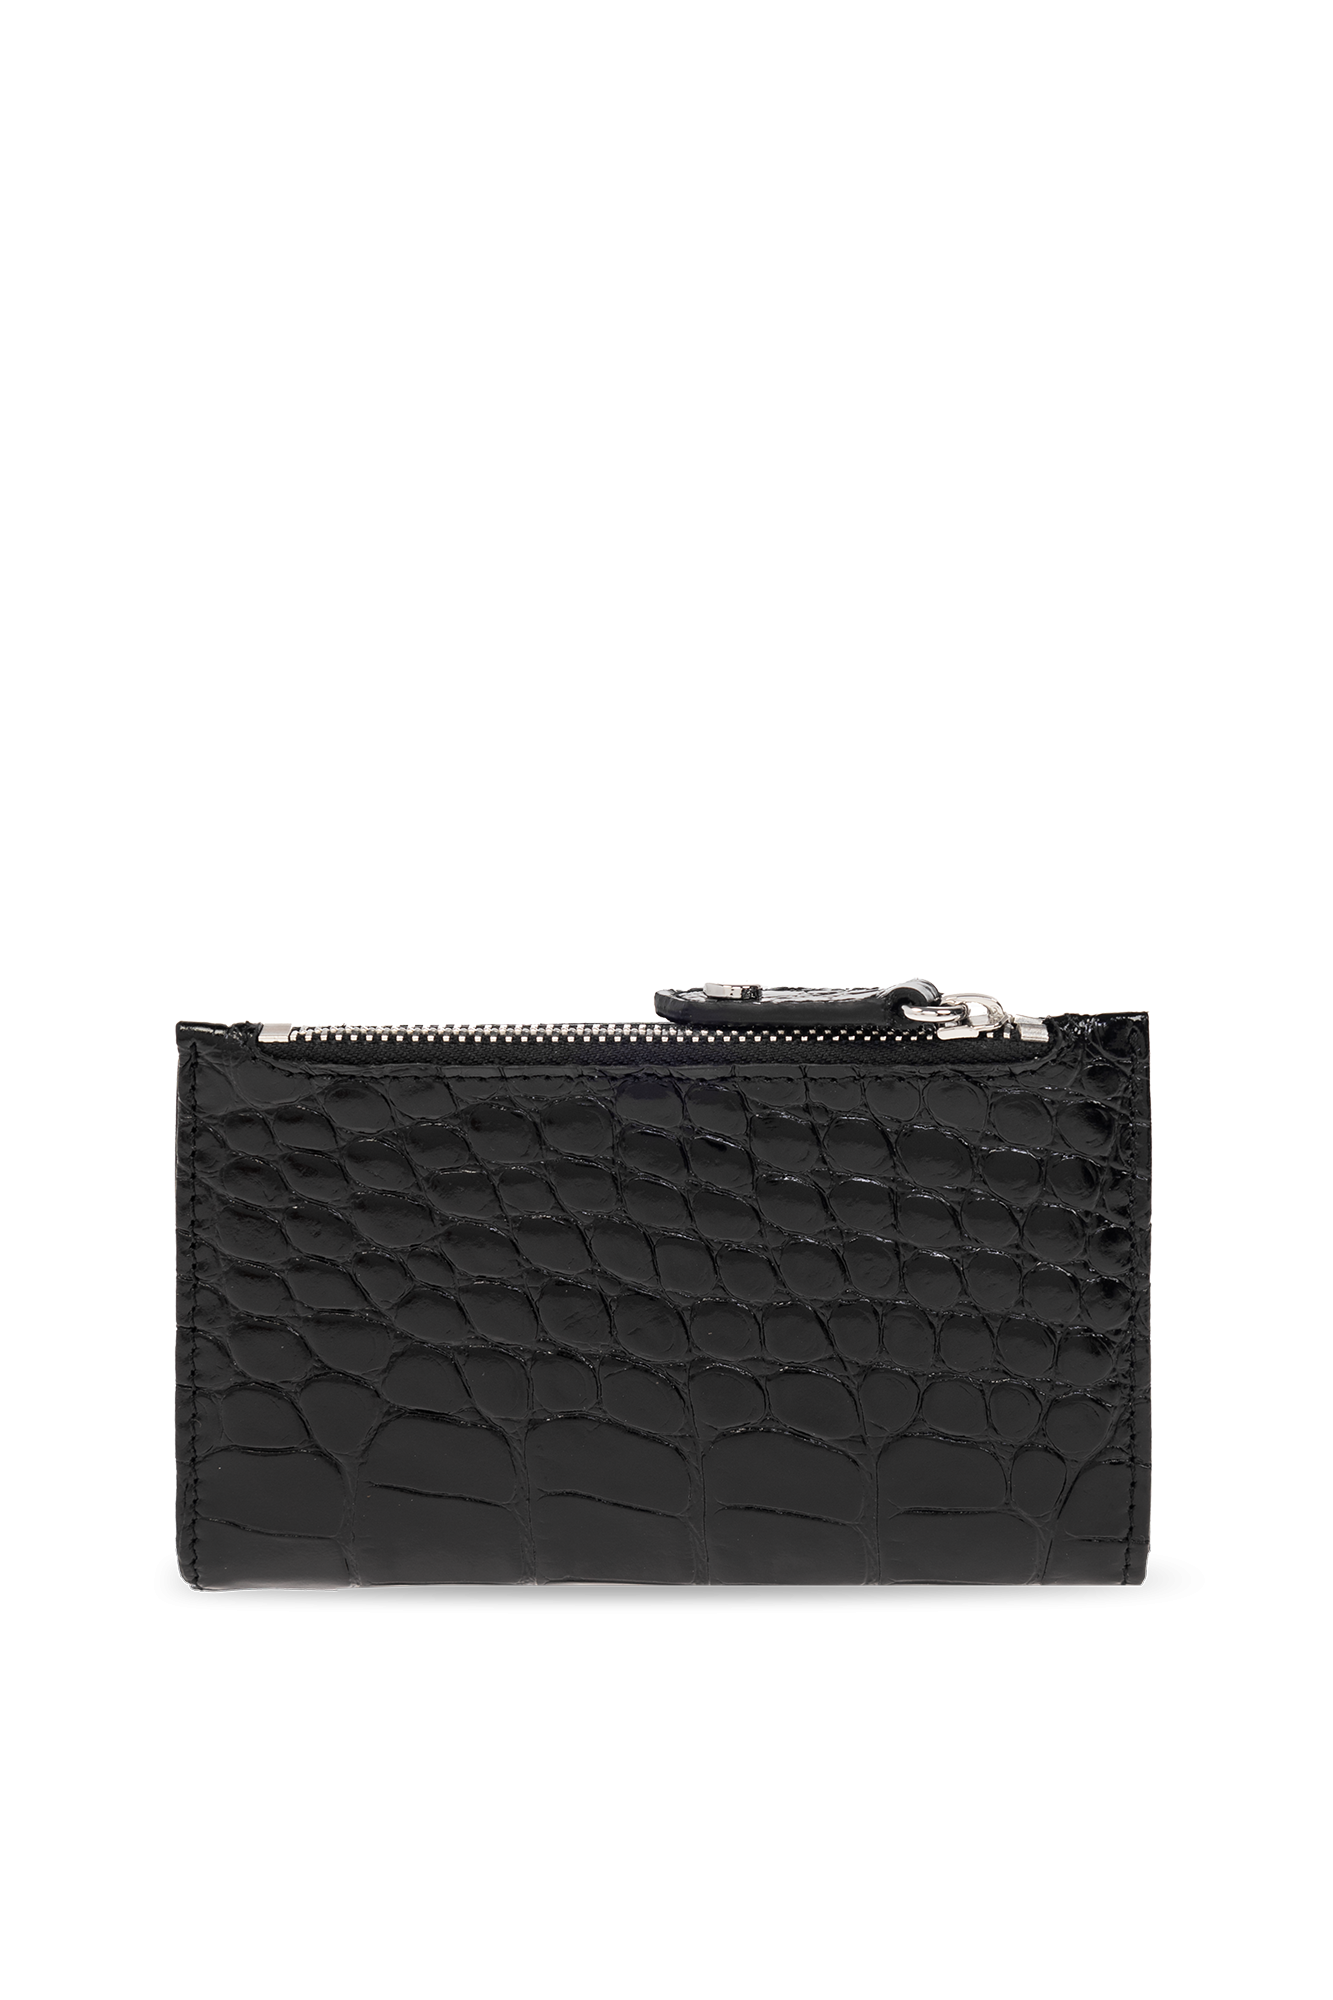 Vivienne Westwood Black Embossed Wallet